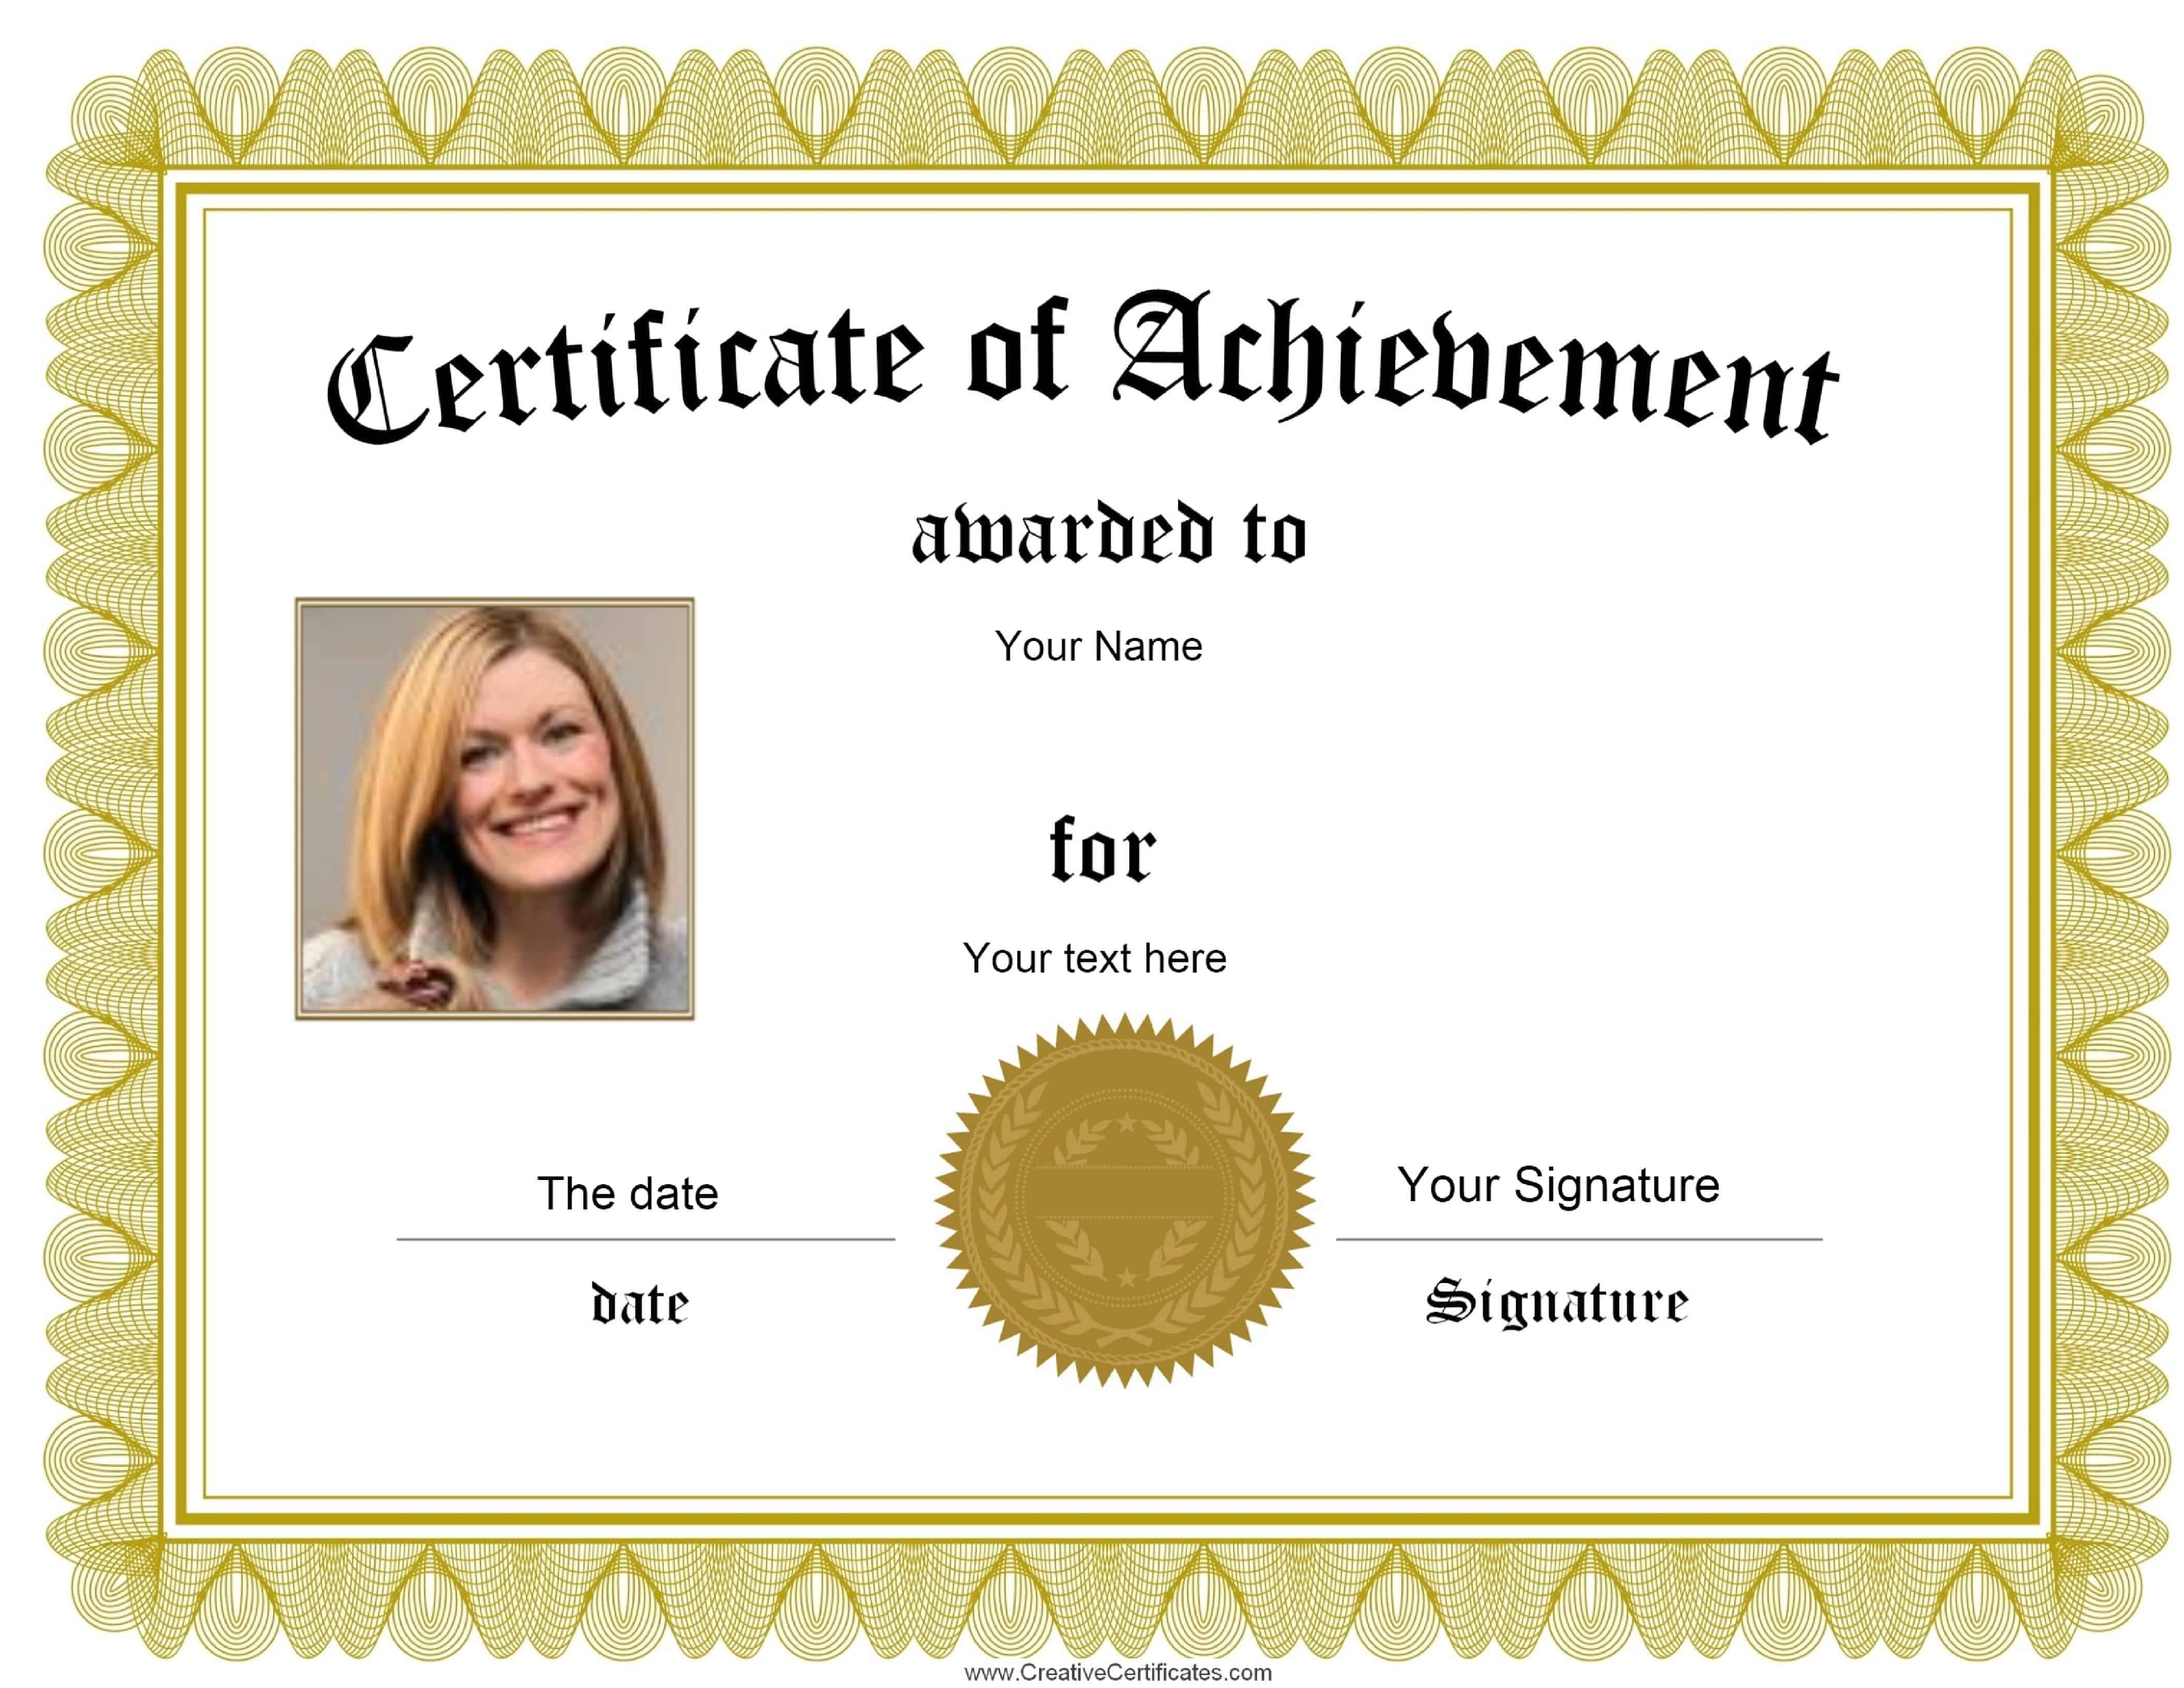 write a certificate